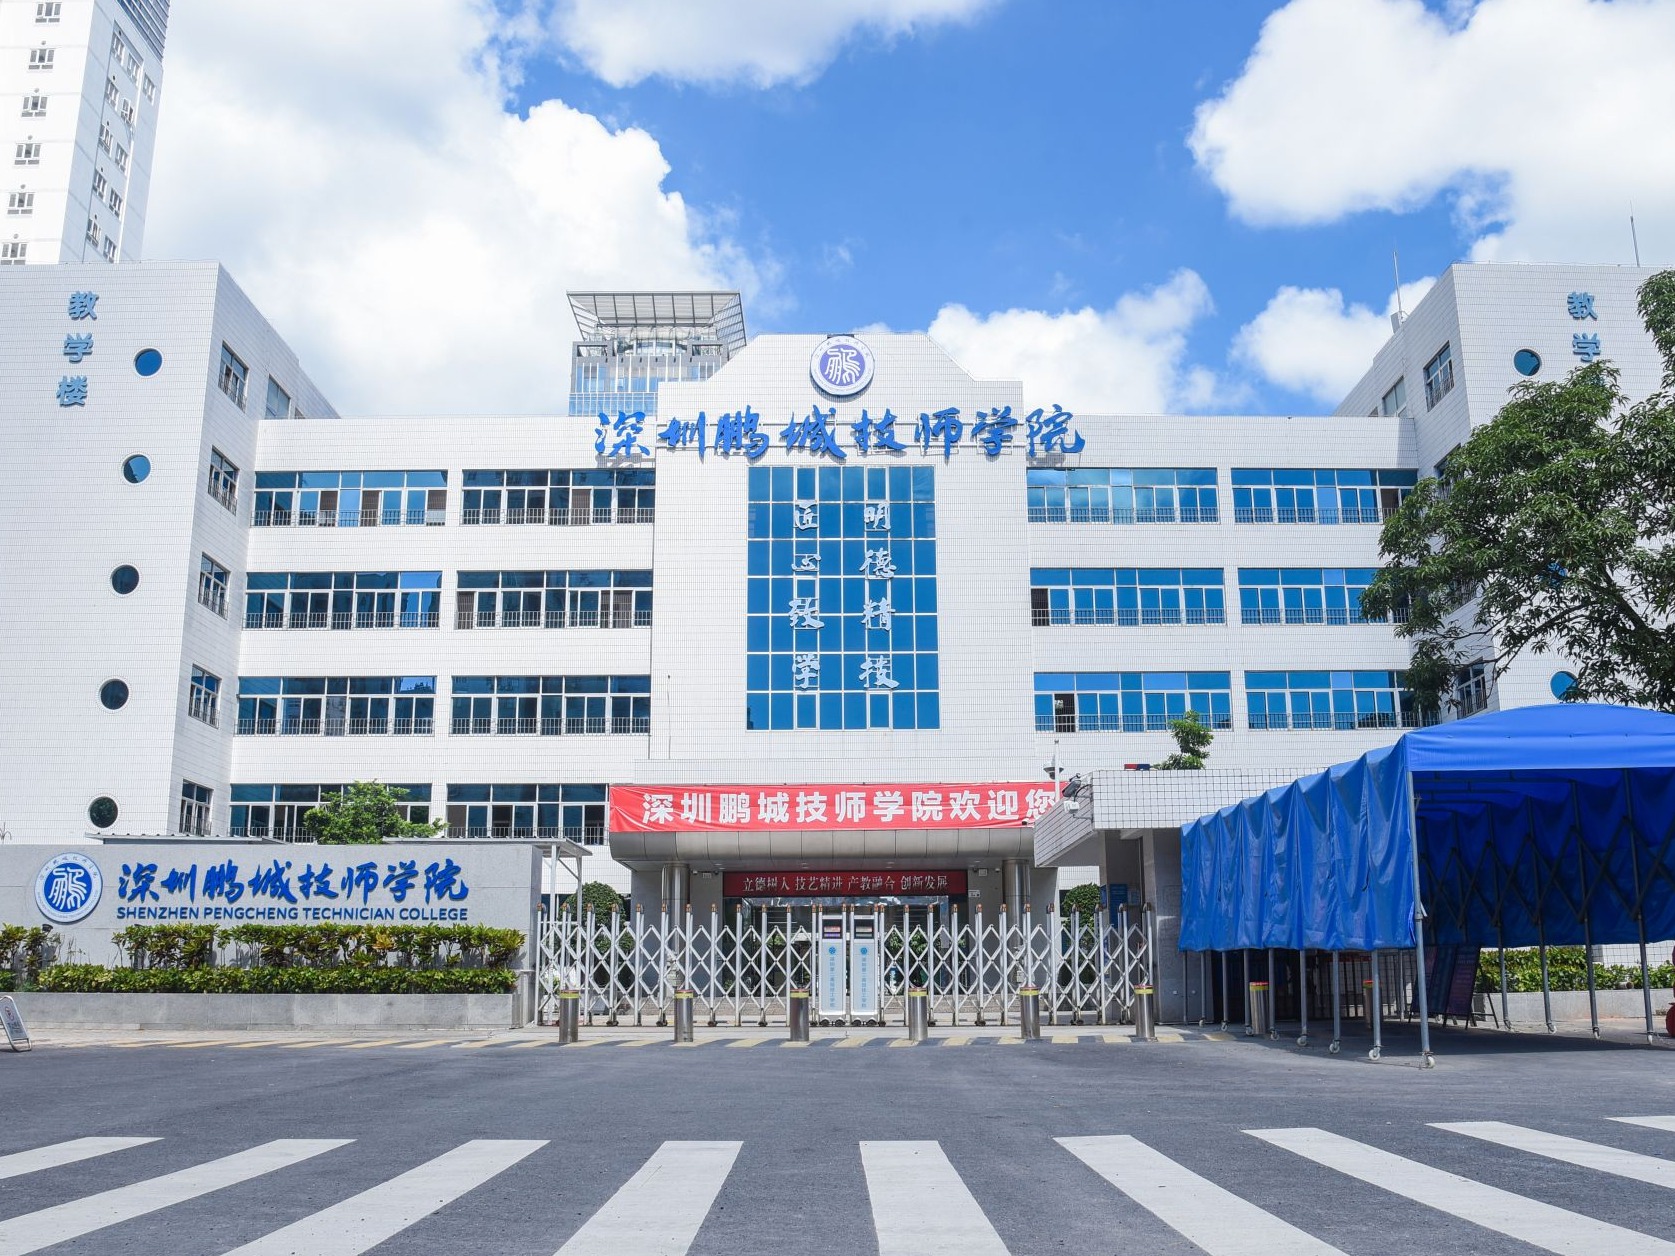 再添一所公办技师学院 深圳鹏城技师学院正式揭牌